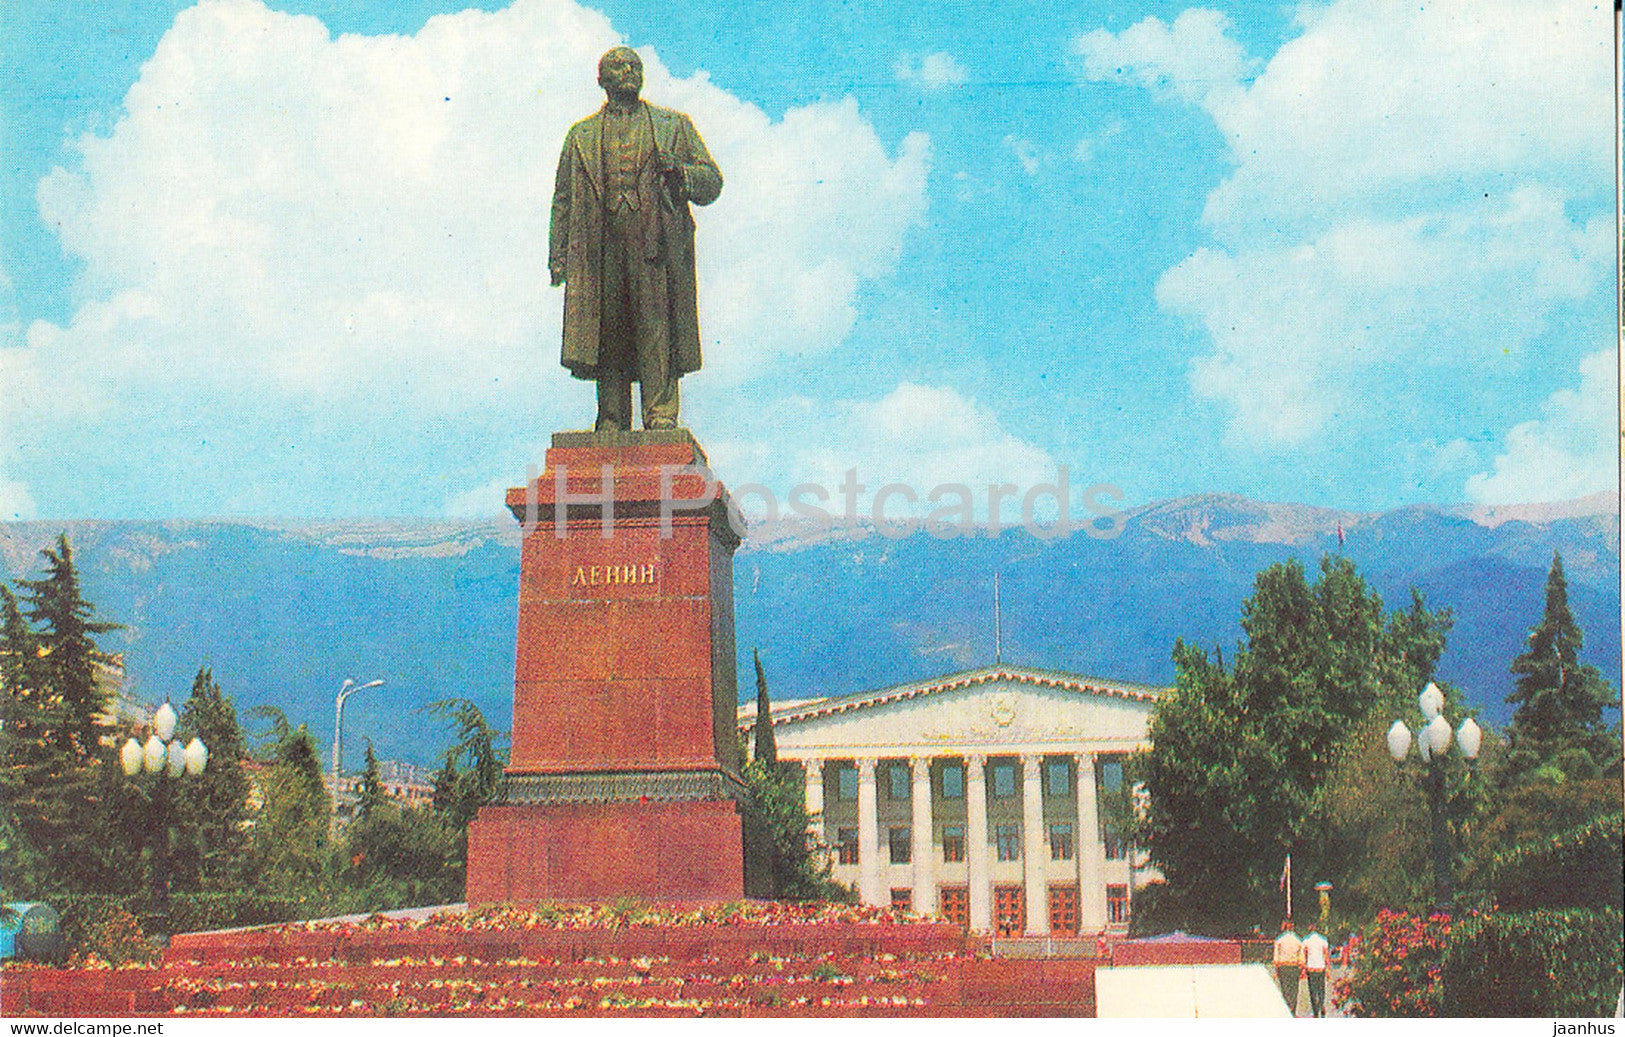 Yalta - Crimea - monument to Lenin - 1977 - Ukraine USSR - unused - JH Postcards